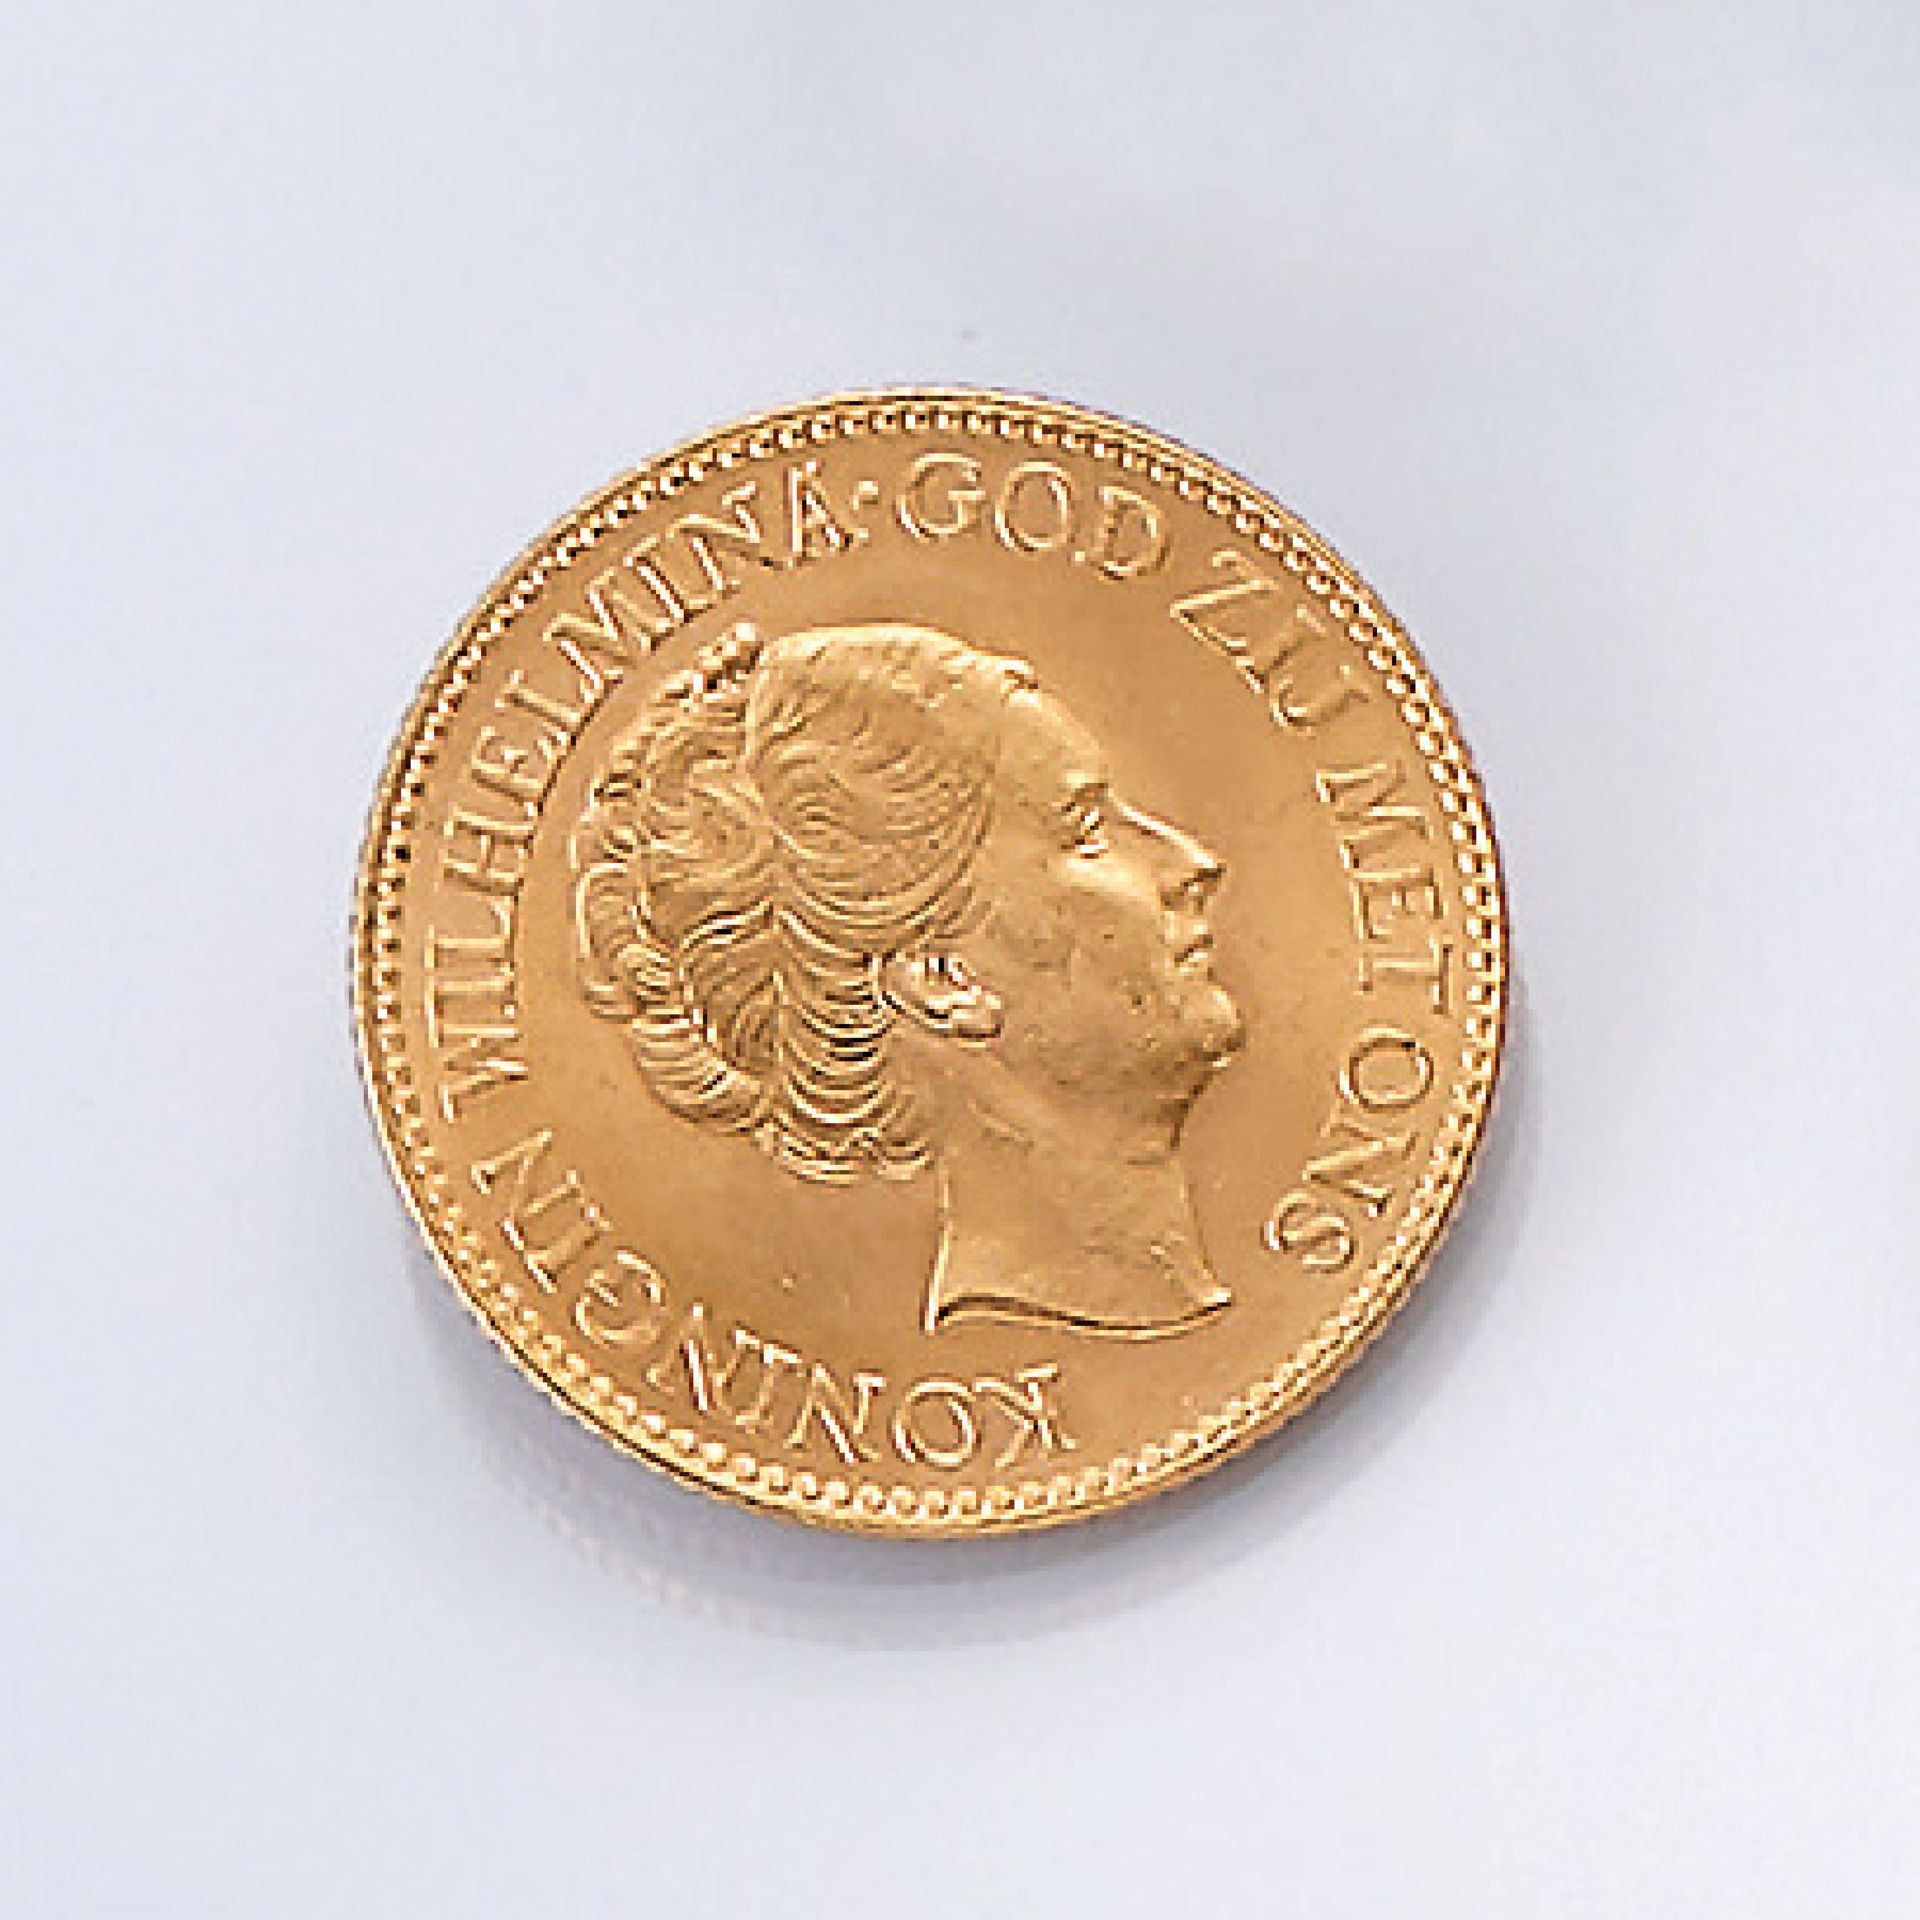 Gold coin, 10 guilder, Netherlands, 1932 , Koningin Wilhelmina, God zij met ons, Koningrijk der